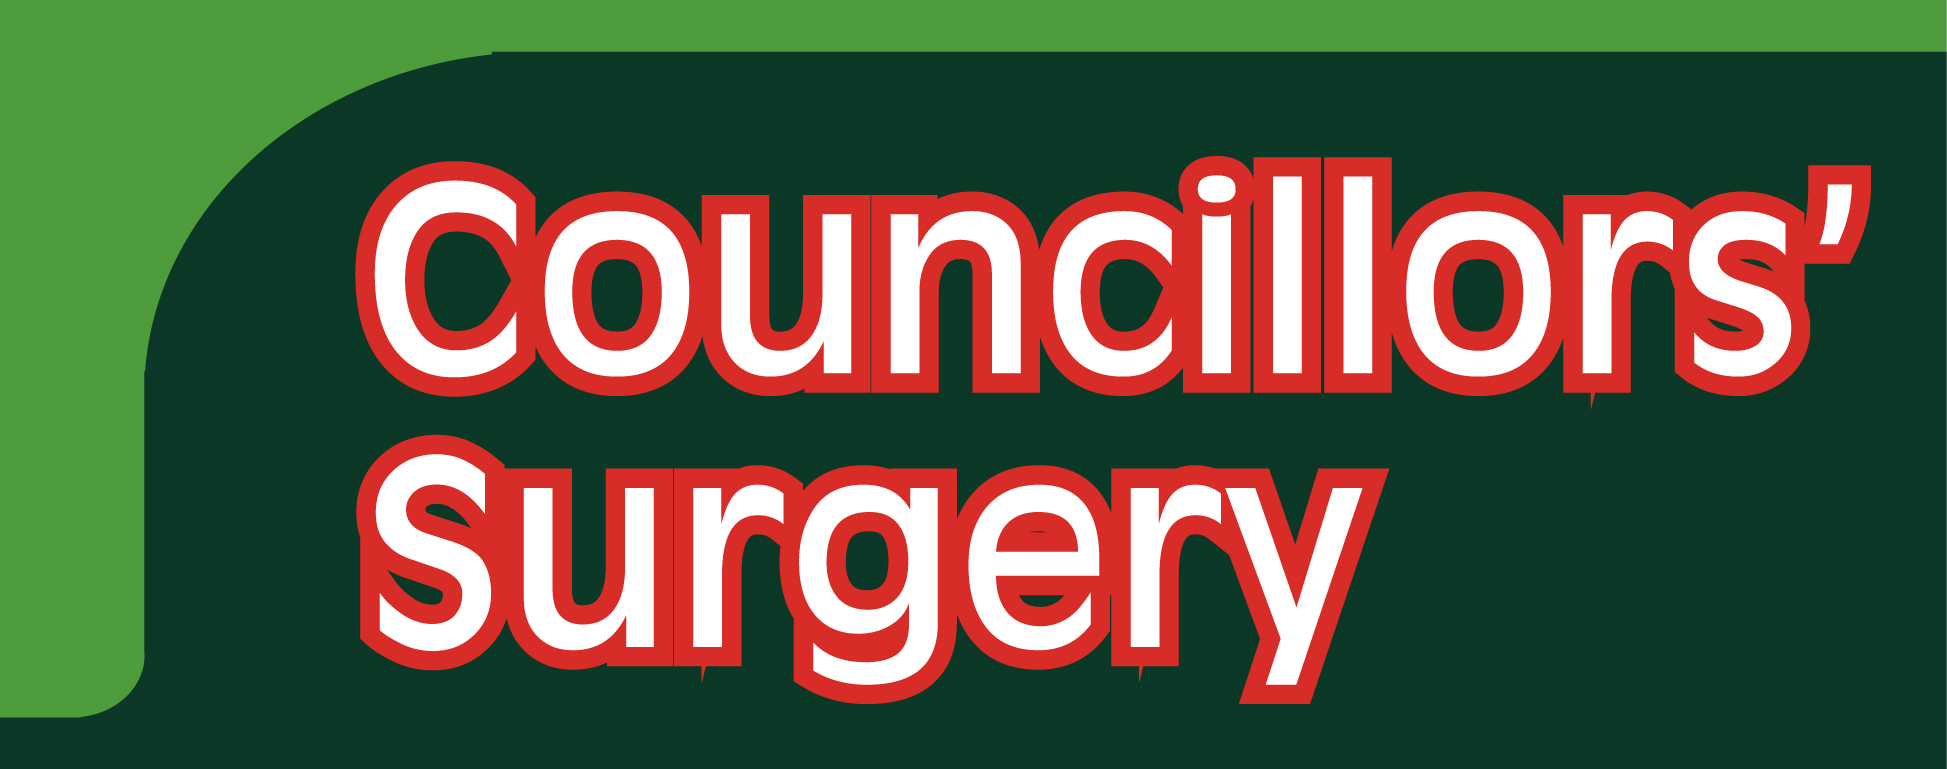 Councillor’s Surgery